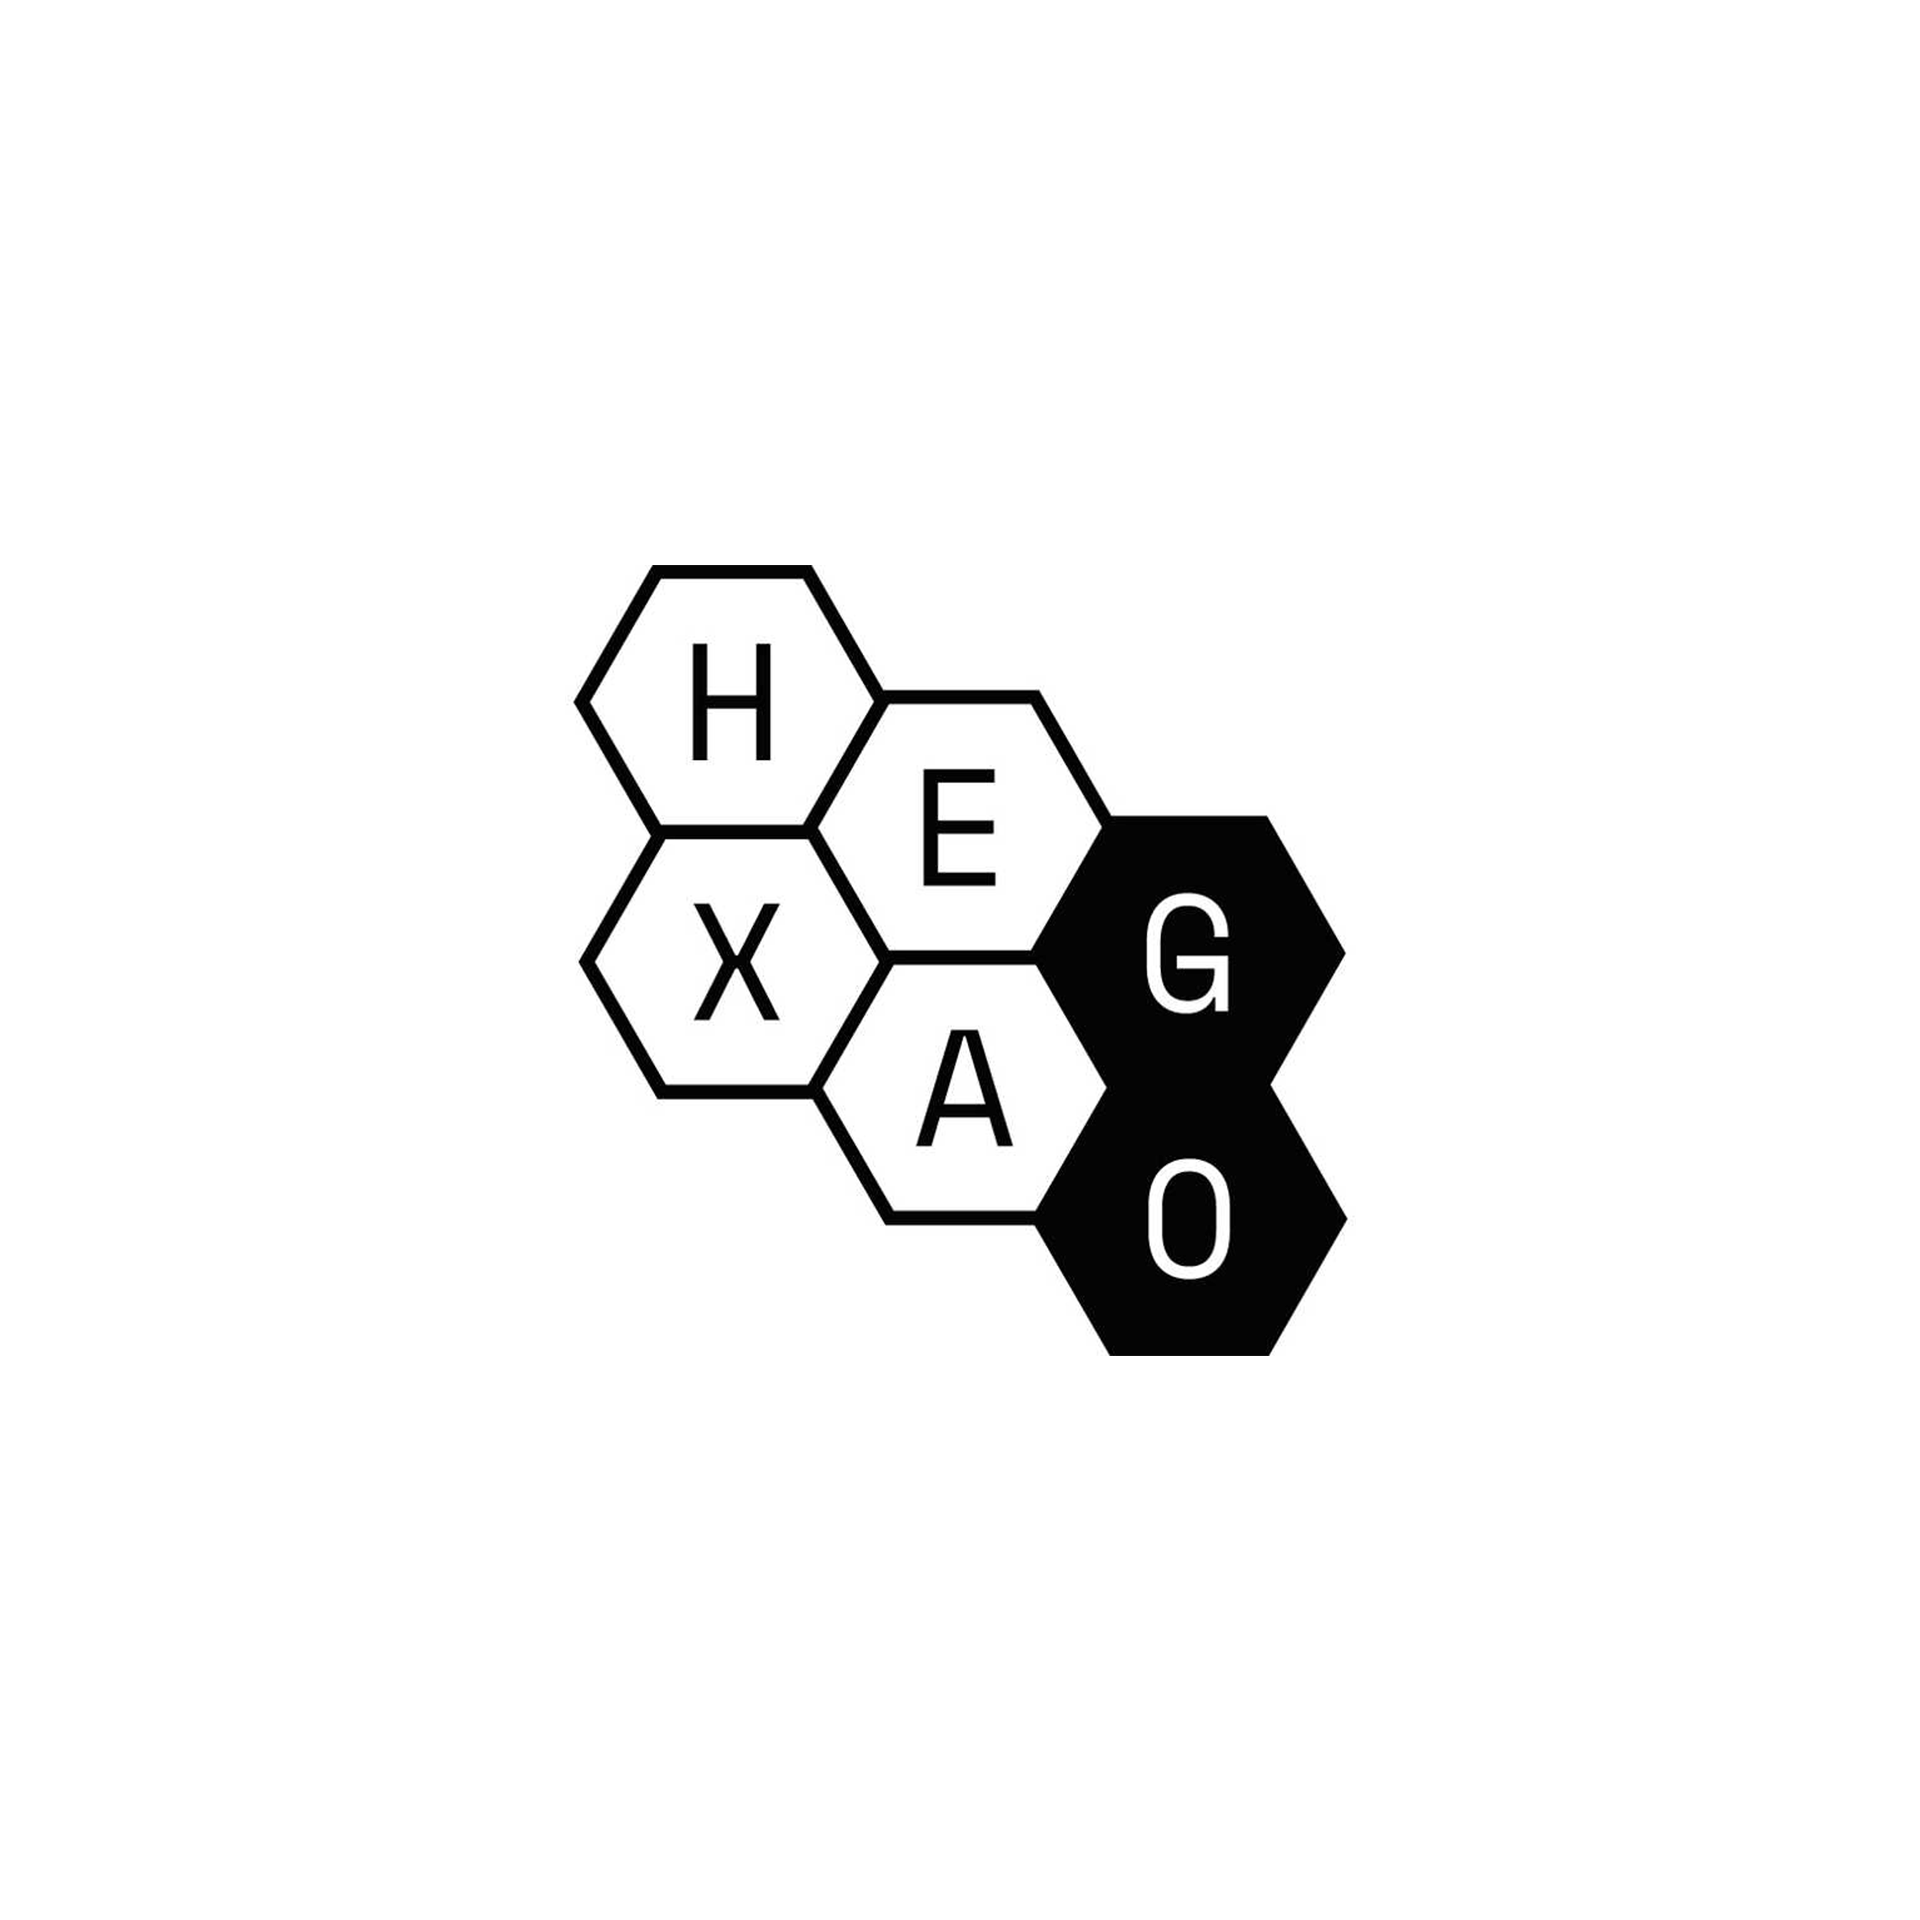 HexaGo 2